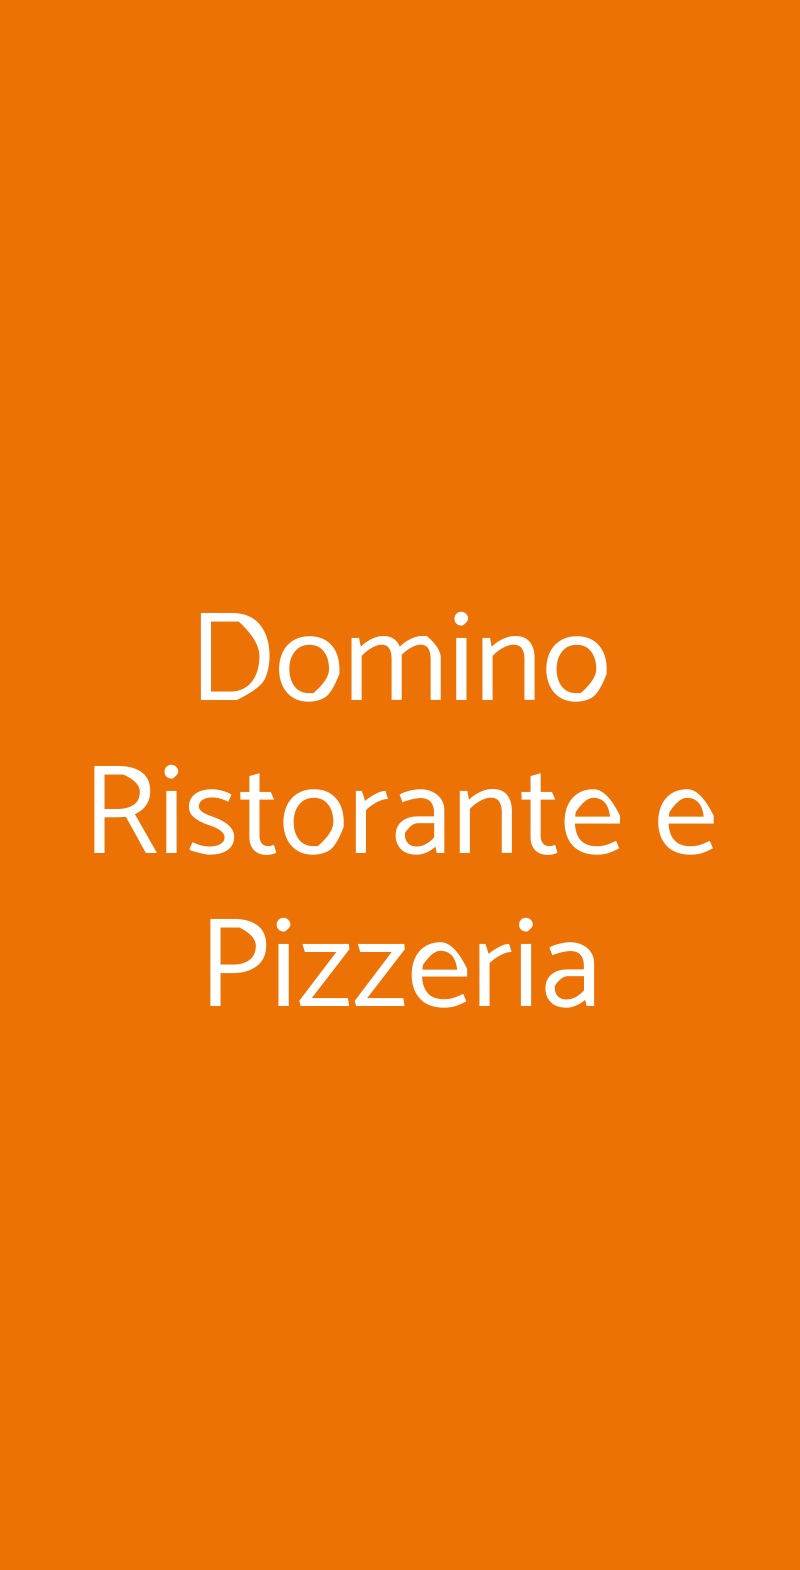 Domino Ristorante e Pizzeria Granarolo dell'Emilia menù 1 pagina